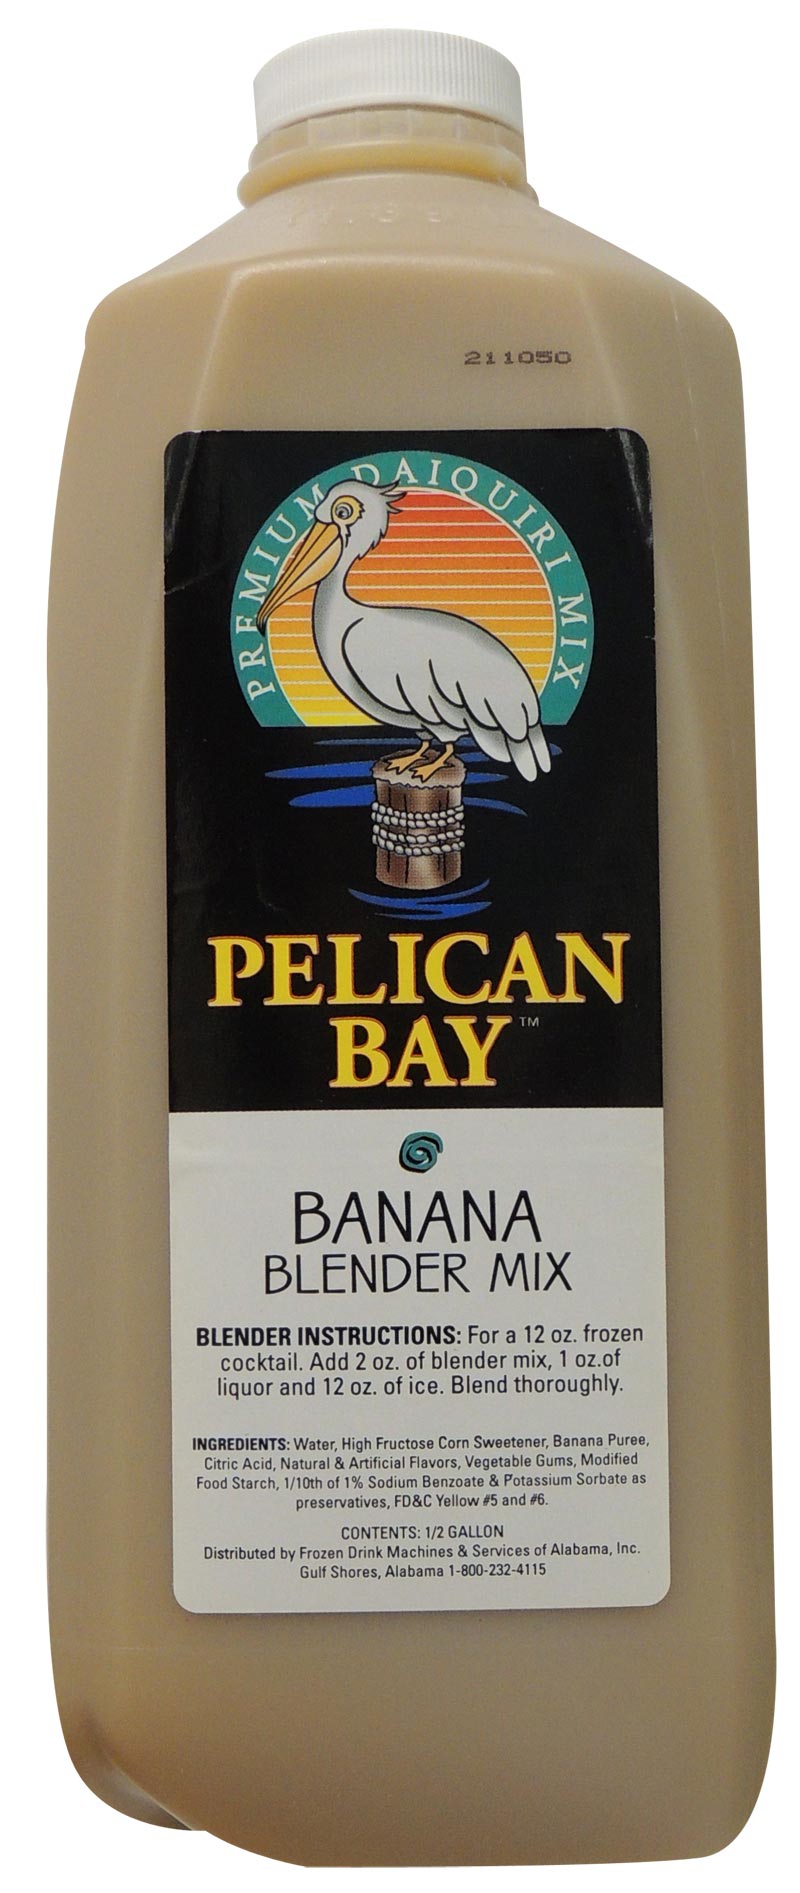 Banana Pelican Bay Premium Drink Flavor Mix